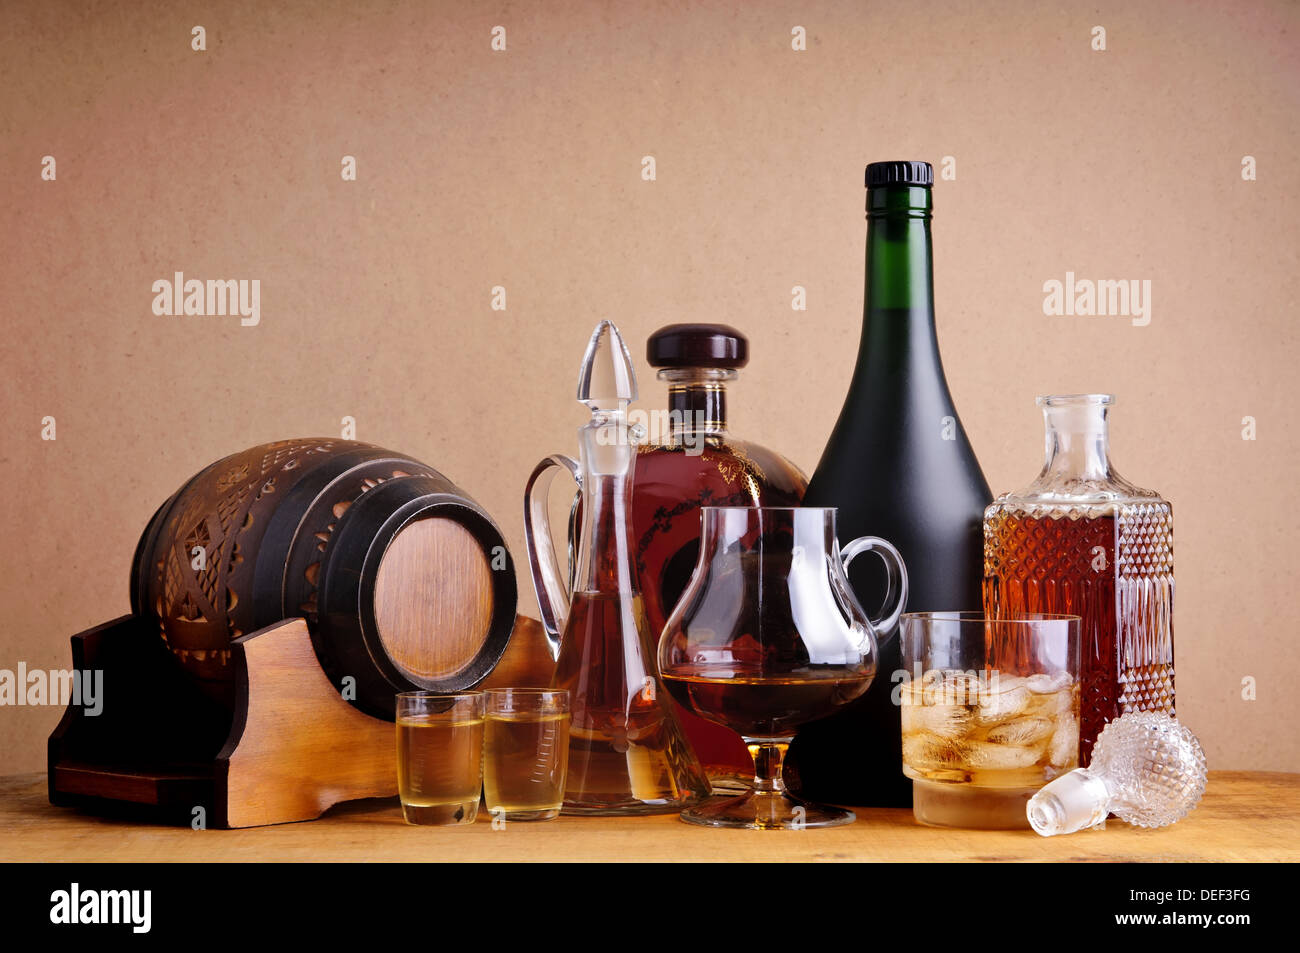 Differnts alkoholische Getränke, Schnaps, Cognac und Whisky auf einem hölzernen Hintergrund Stockfoto